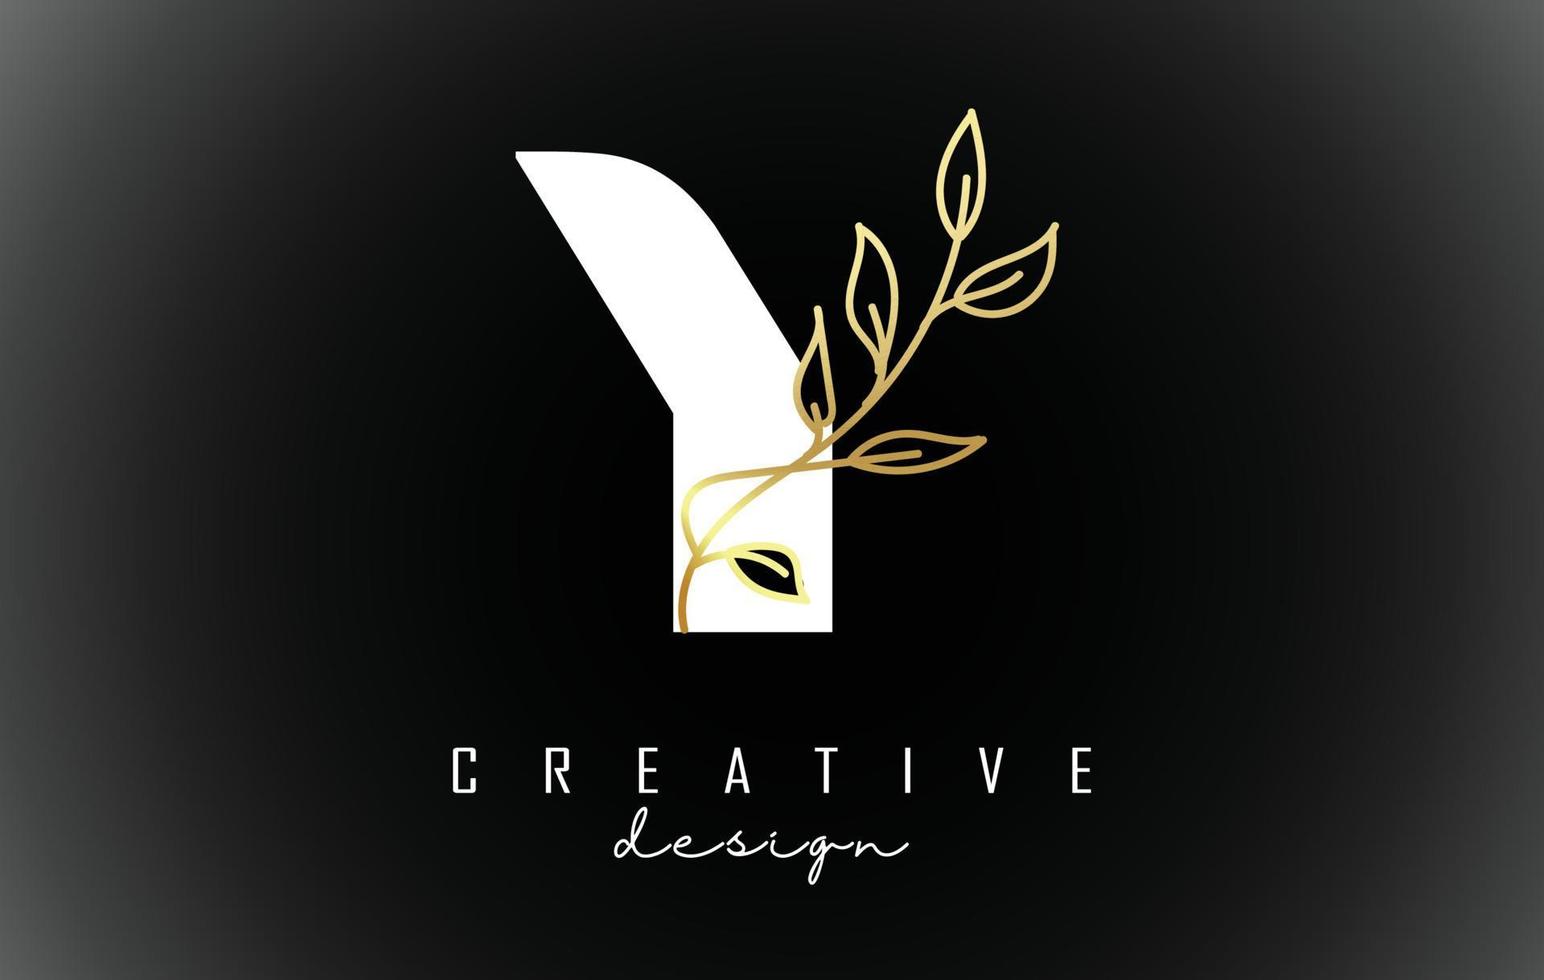 White Y letter logo design with golden leaves branch vector illustration.